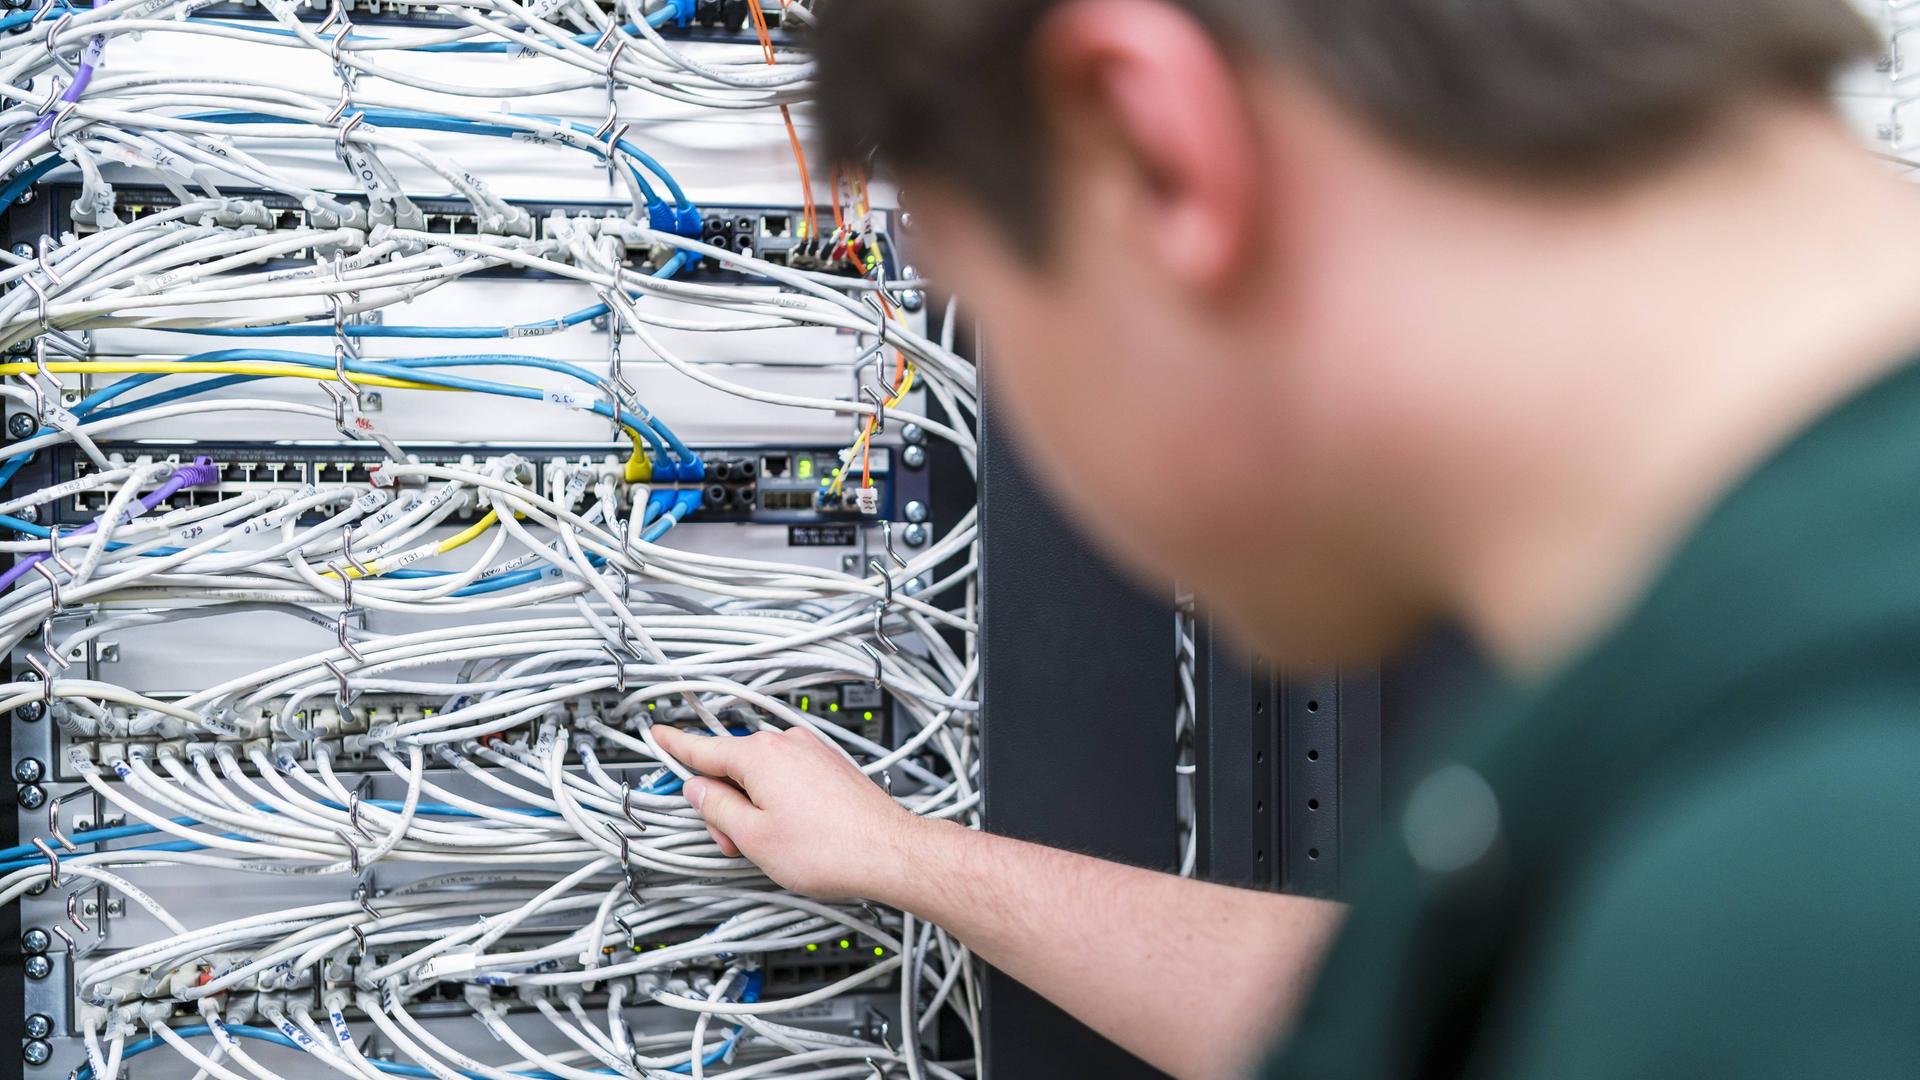 Ein Jugendlicher arbeitet an Kabeln in einem Serverraum